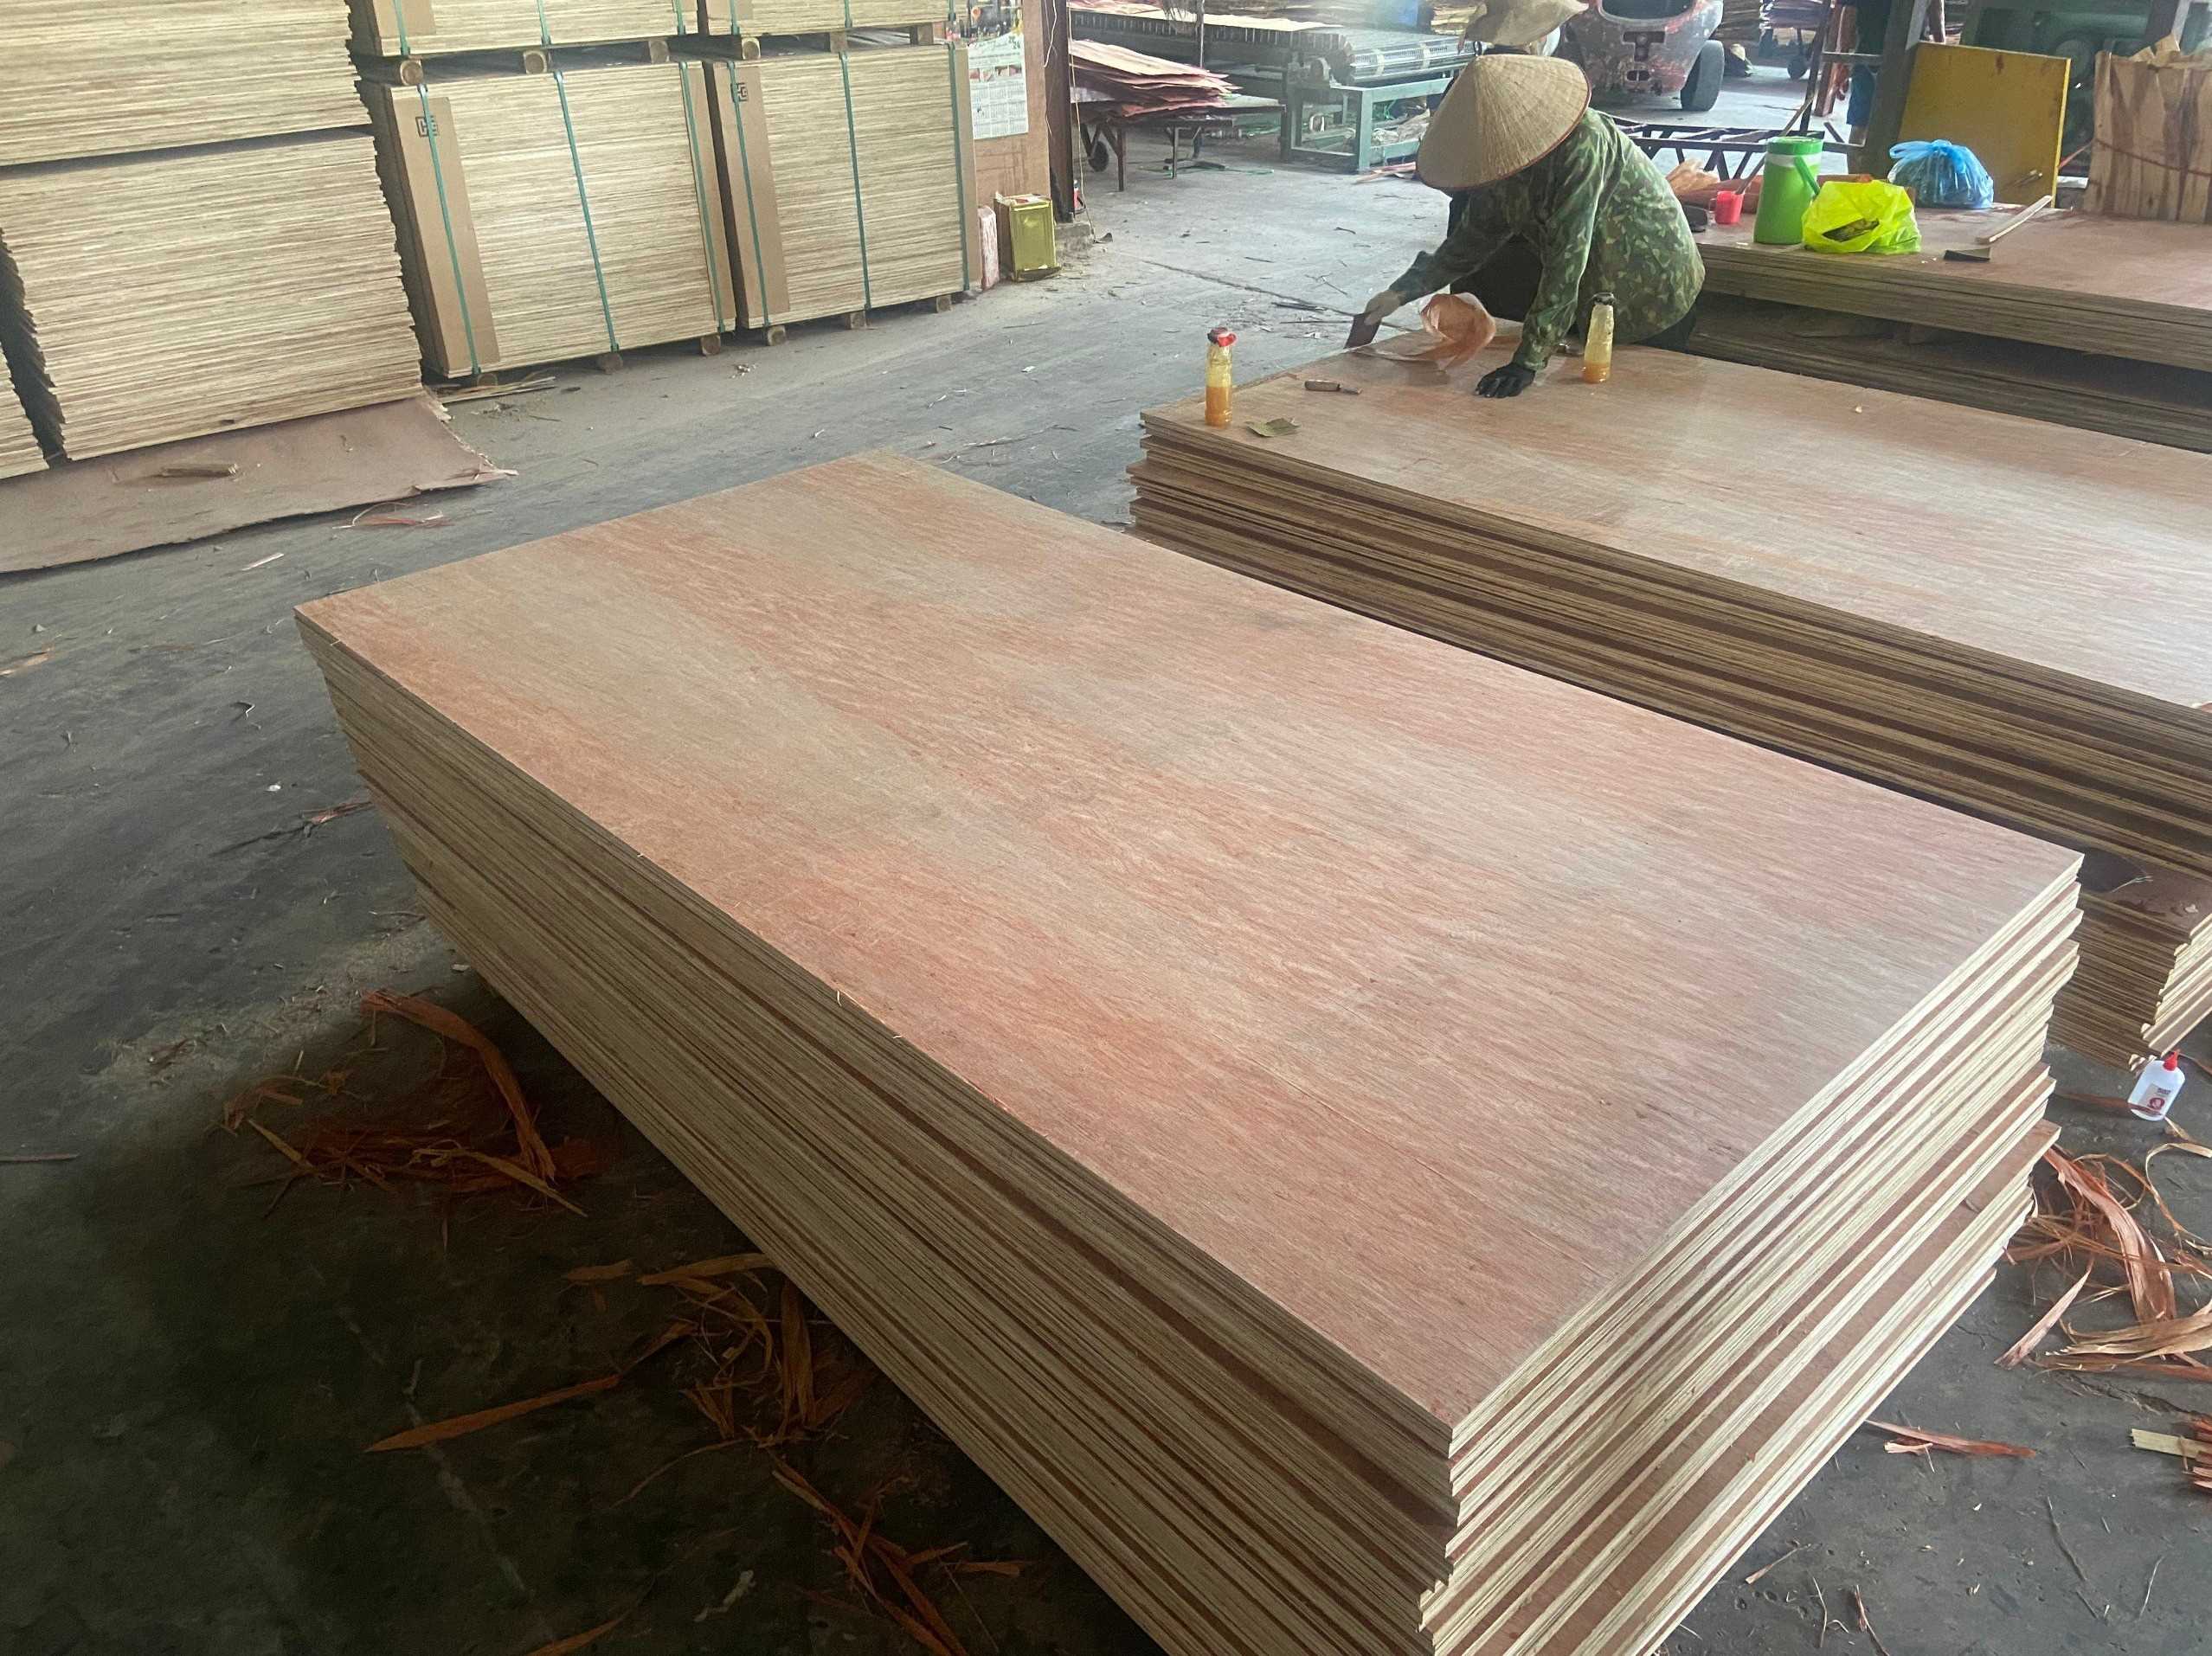 Công ty Victory3307 đang cần tìm vận tải hàng gỗ dán chuyên tuyến Ấn Độ